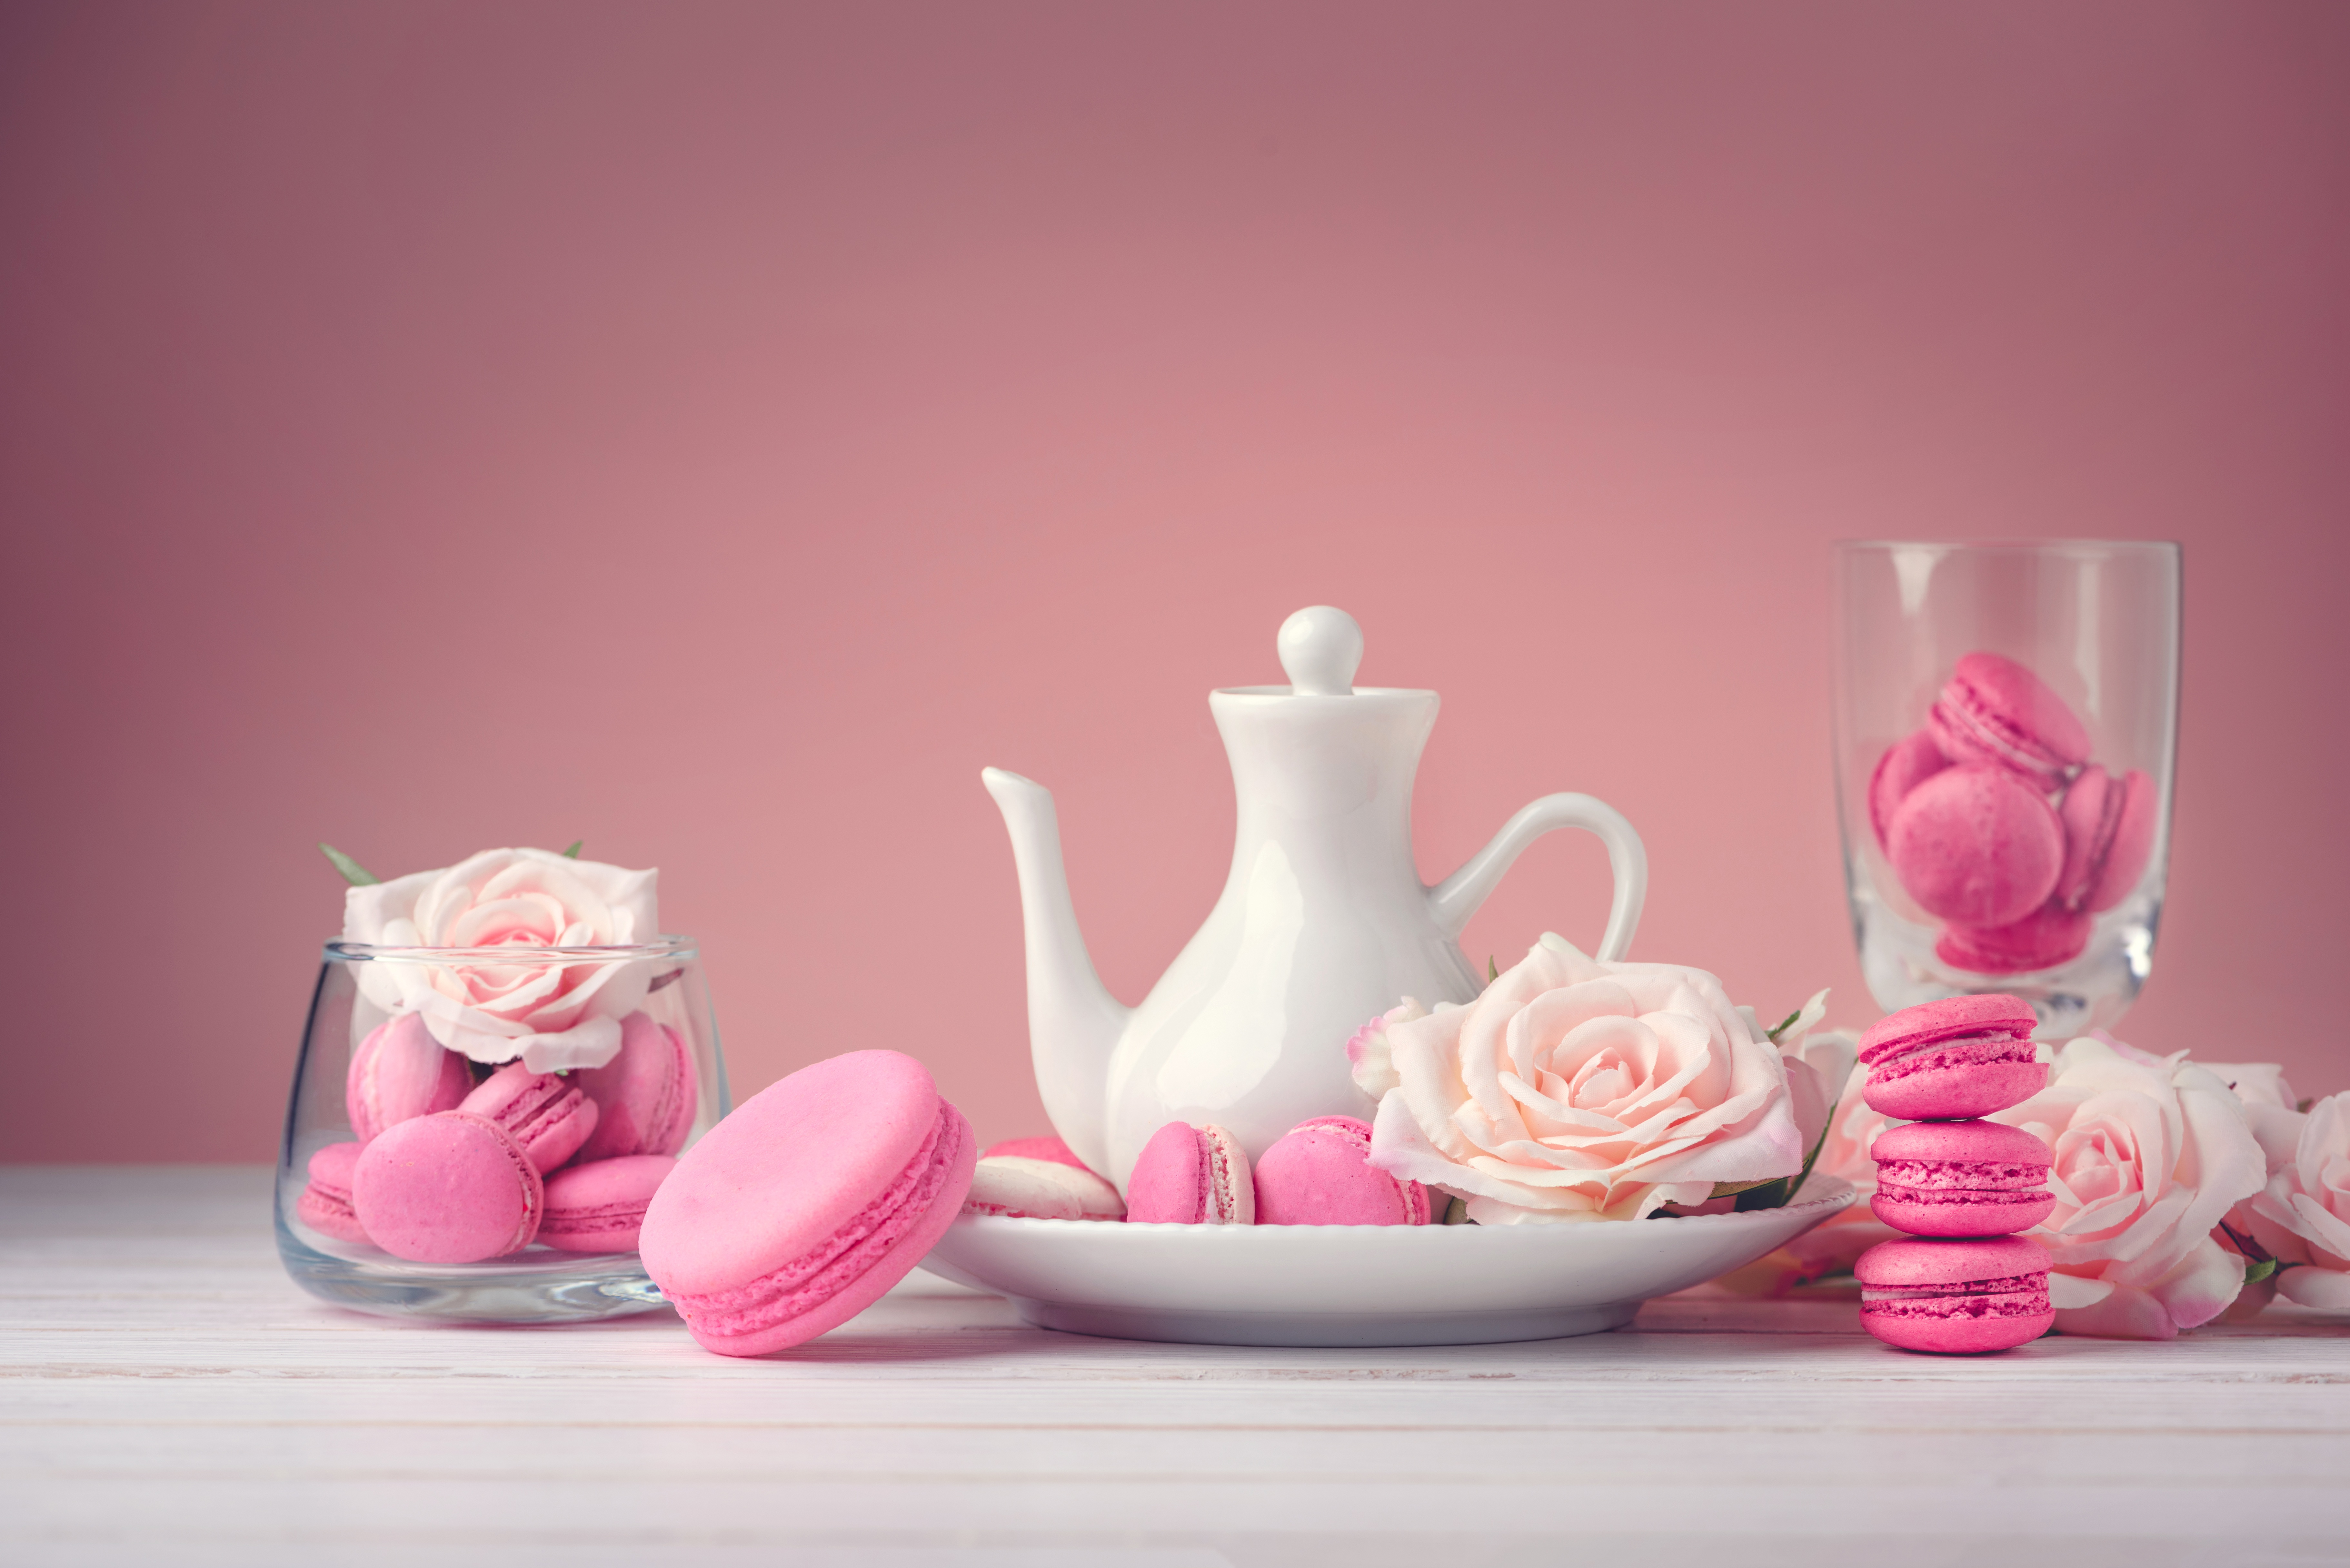 Нежны сладостны. Нежные сладости. Нежные цветы и пирожные. Чаепитие в розовых тонах. Сладости розовый.